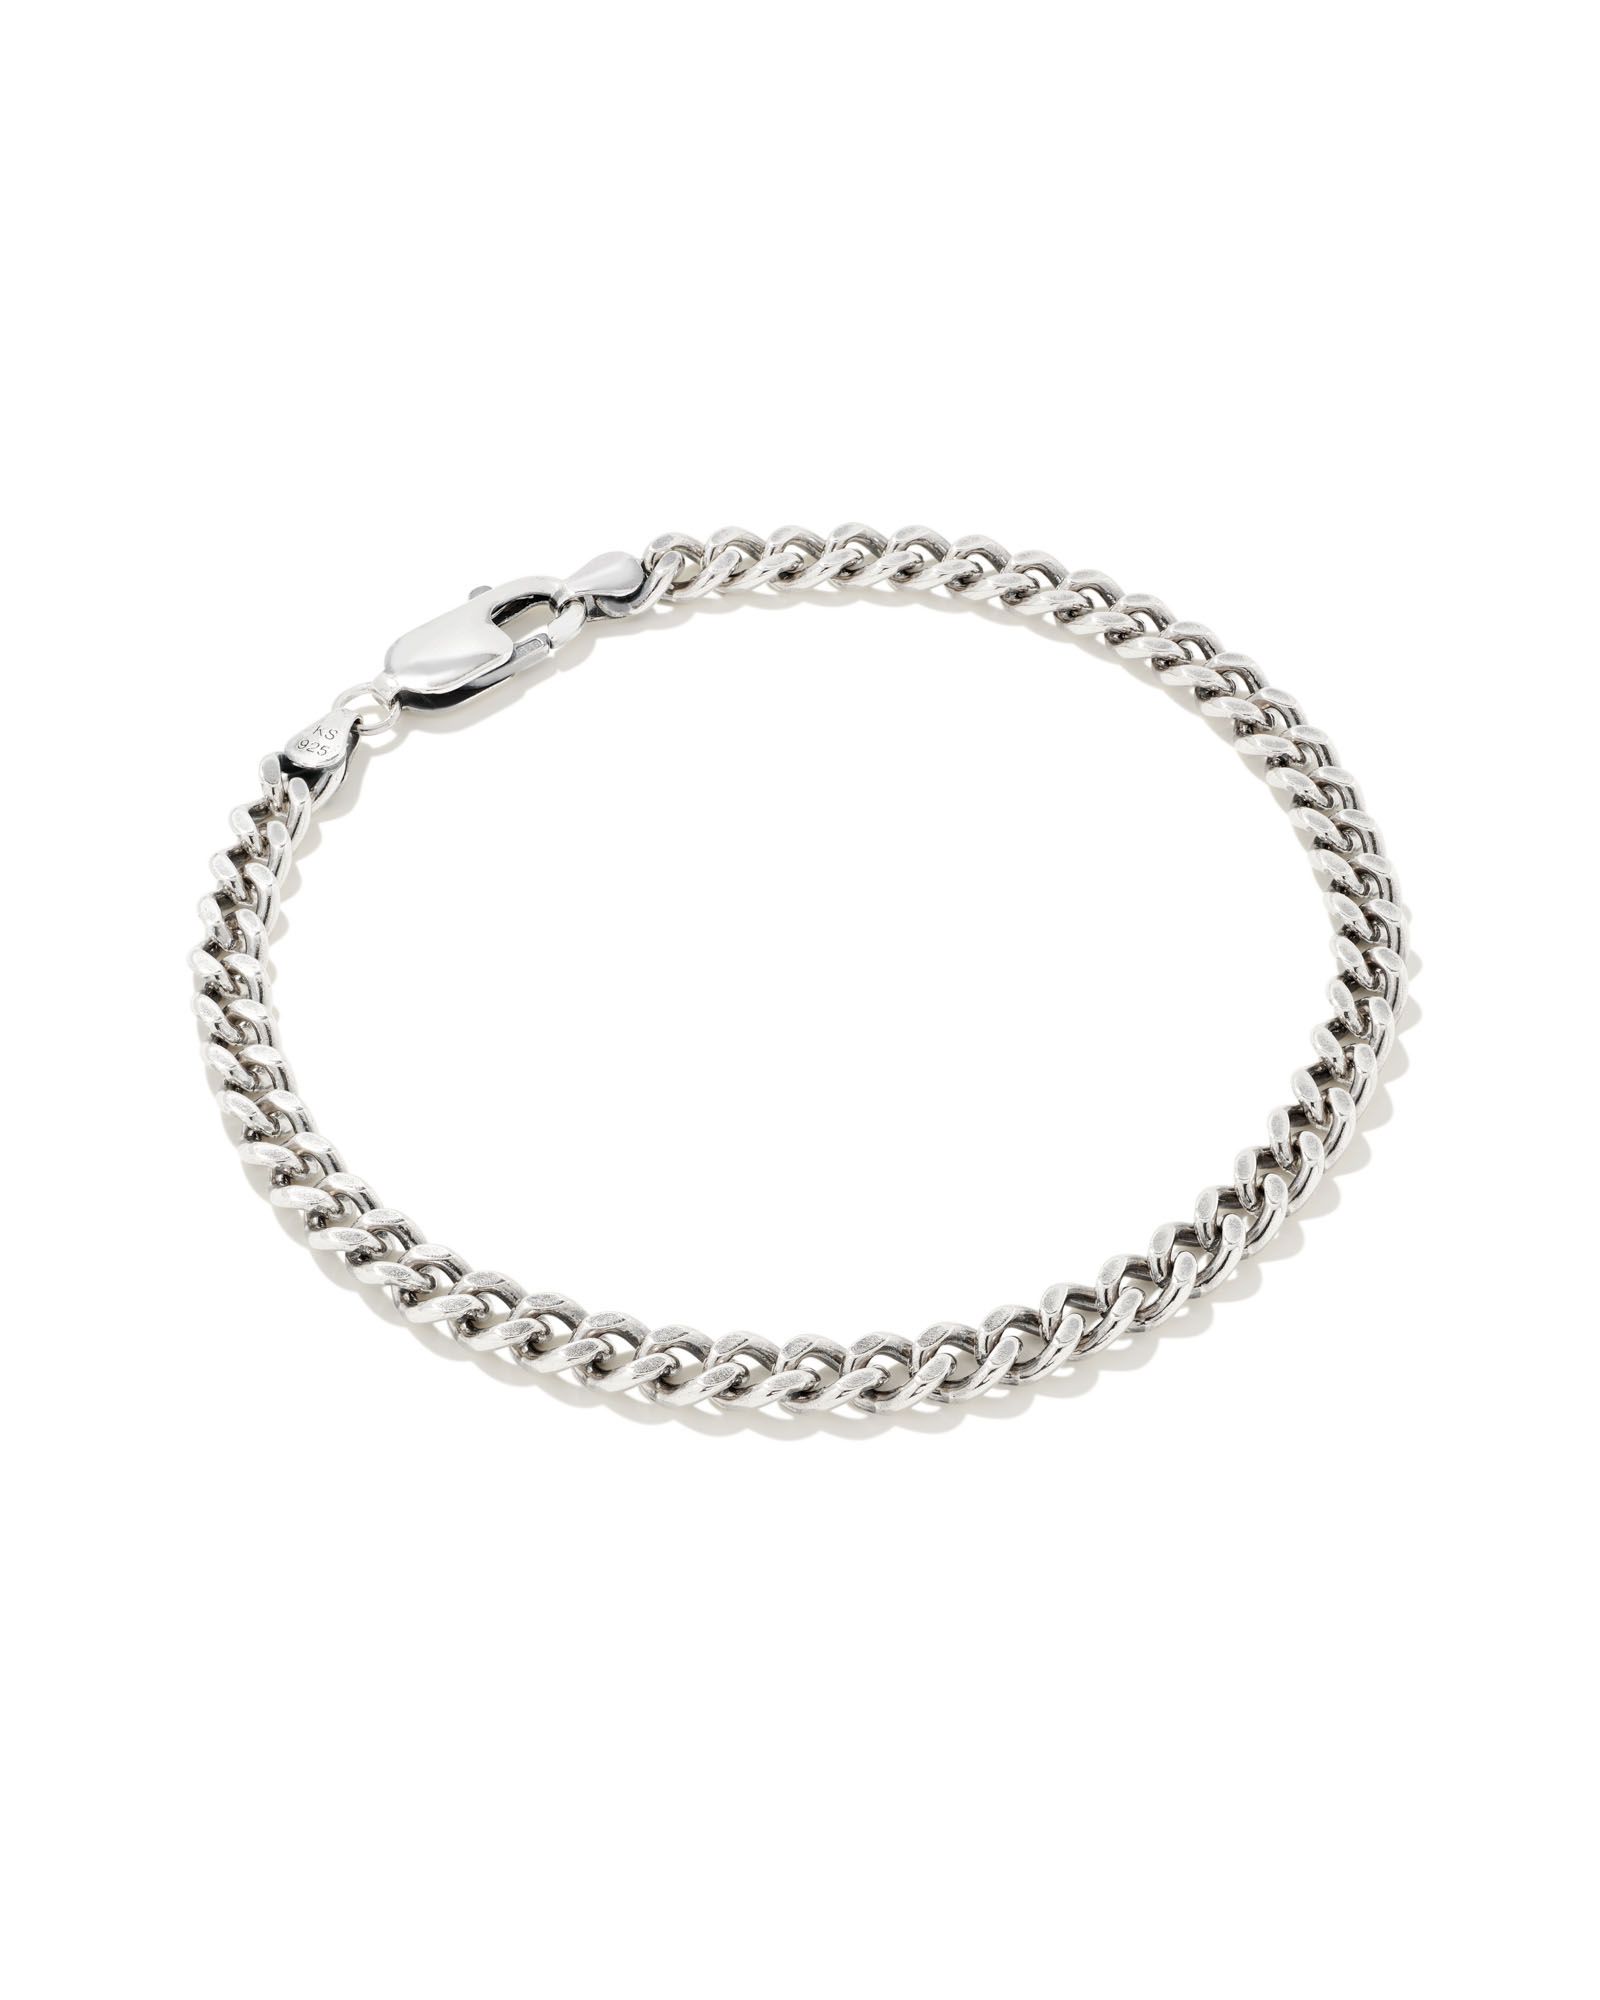 Curb Chain Bracelet in Oxidized Sterling Silver | Kendra Scott | Kendra Scott